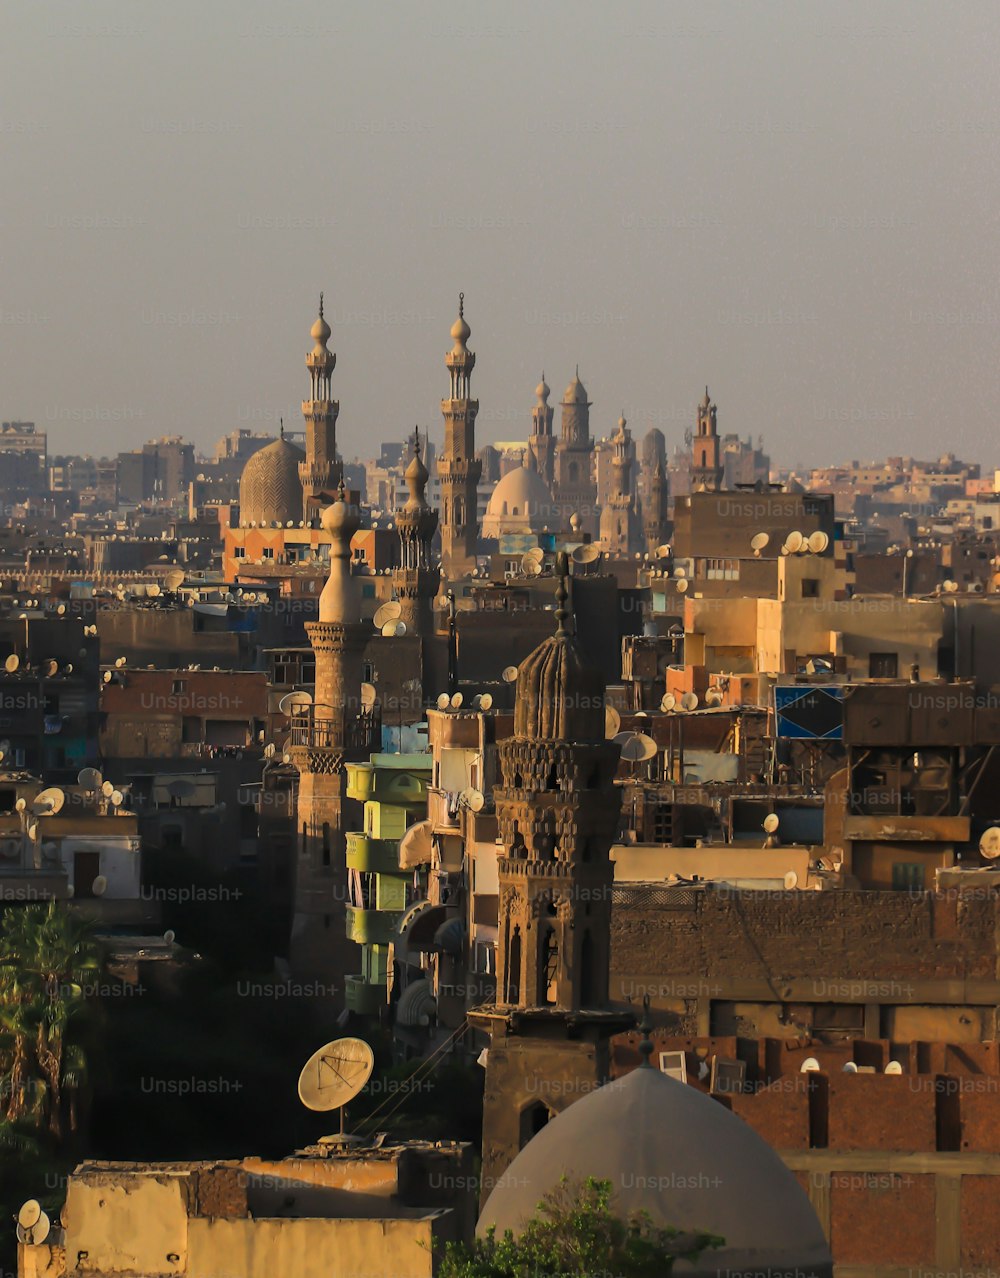 Ein wunderschöner Blick auf Kairo, Ägypten